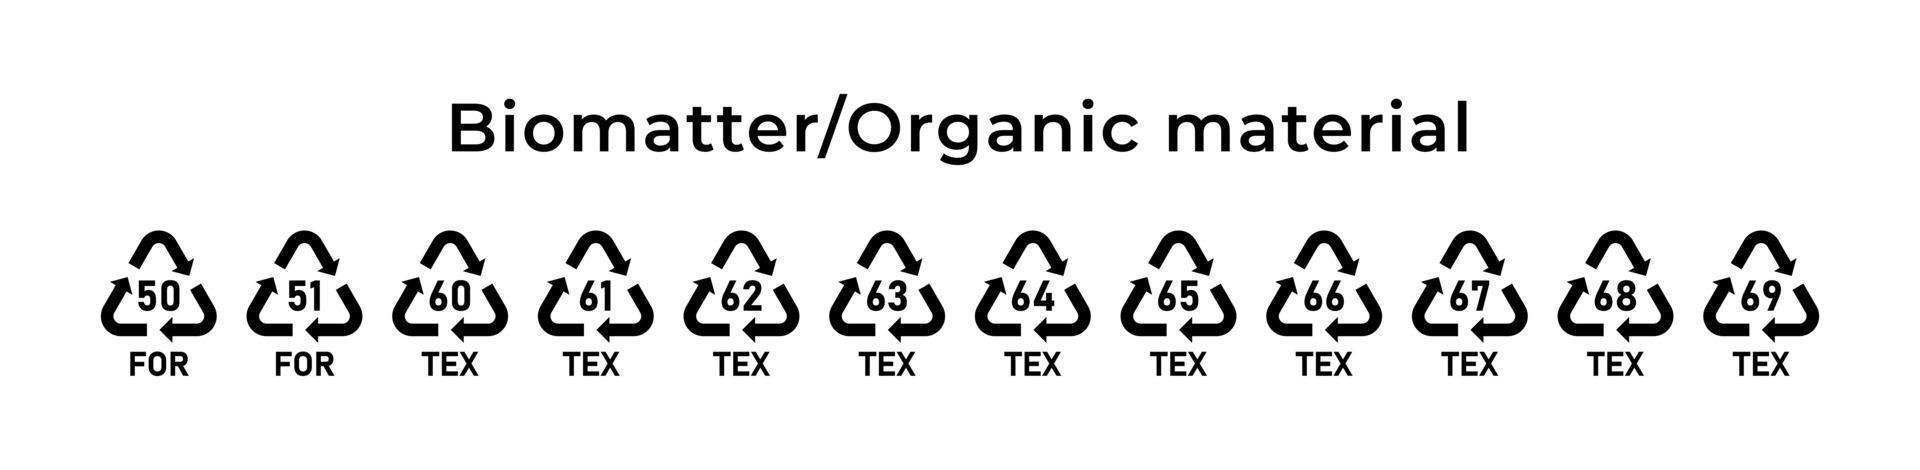 riciclaggio di biomateria o marchio di materiale organico. codici di riciclaggio ecologico. zero sprechi. illustrazione vettoriale. set di icone di linea tratto modificabile. vettore